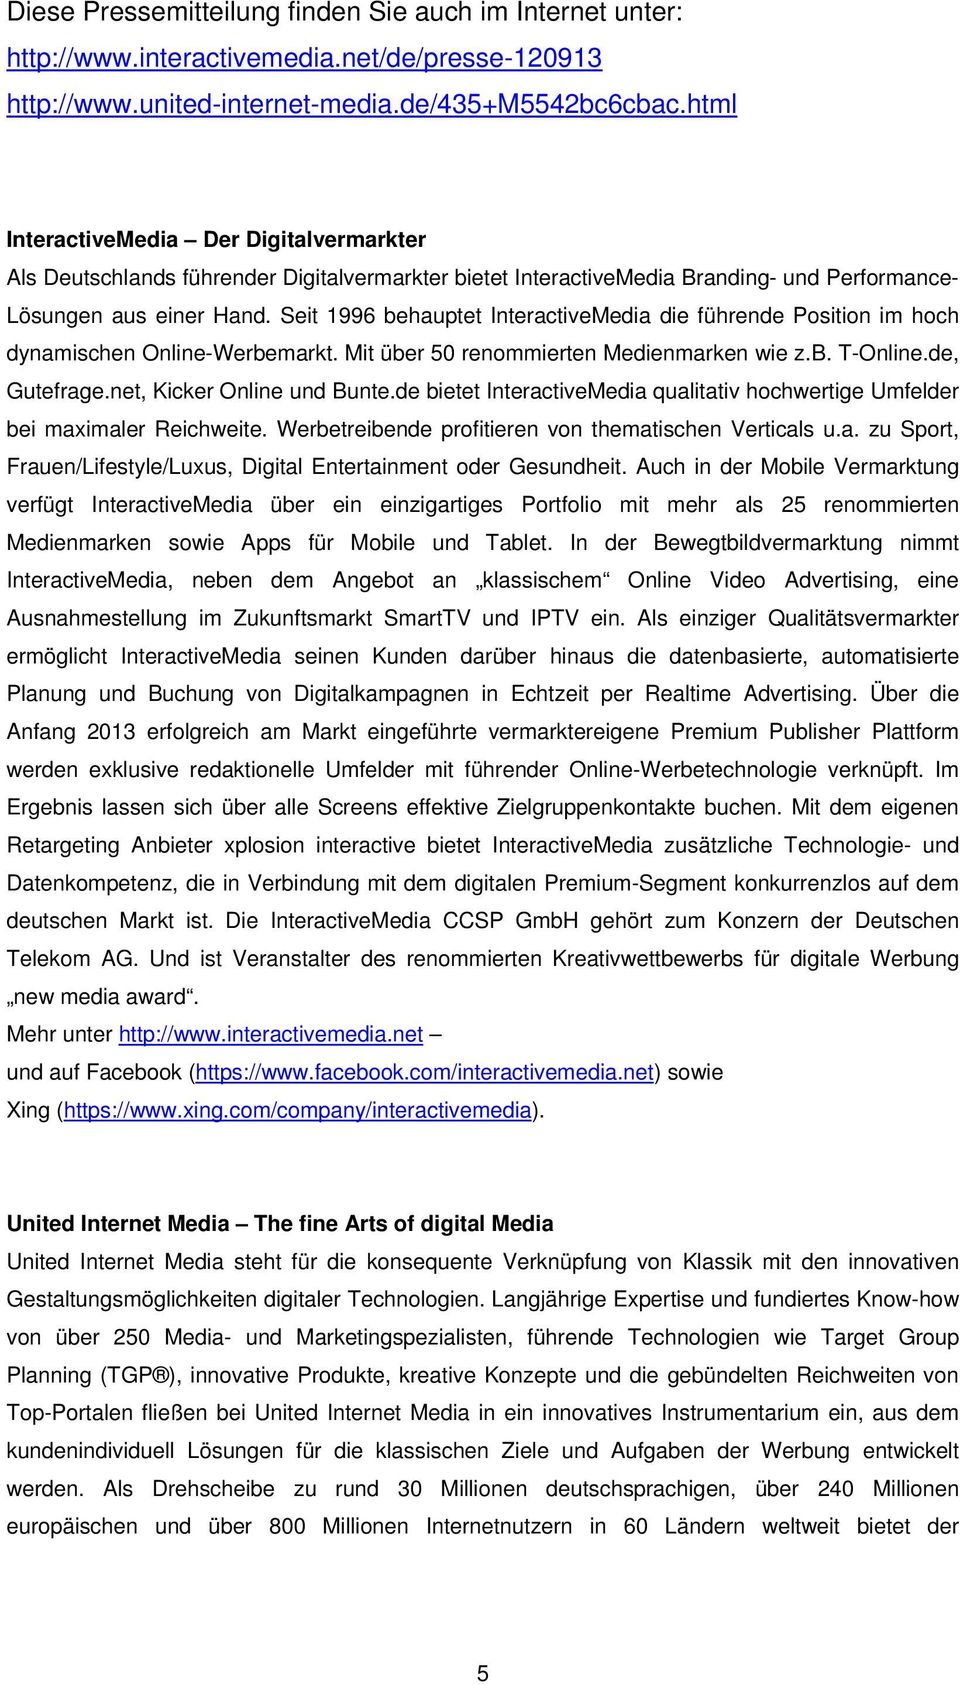 Seit 1996 behauptet InteractiveMedia die führende Position im hoch dynamischen Online-Werbemarkt. Mit über 50 renommierten Medienmarken wie z.b. T-Online.de, Gutefrage.net, Kicker Online und Bunte.